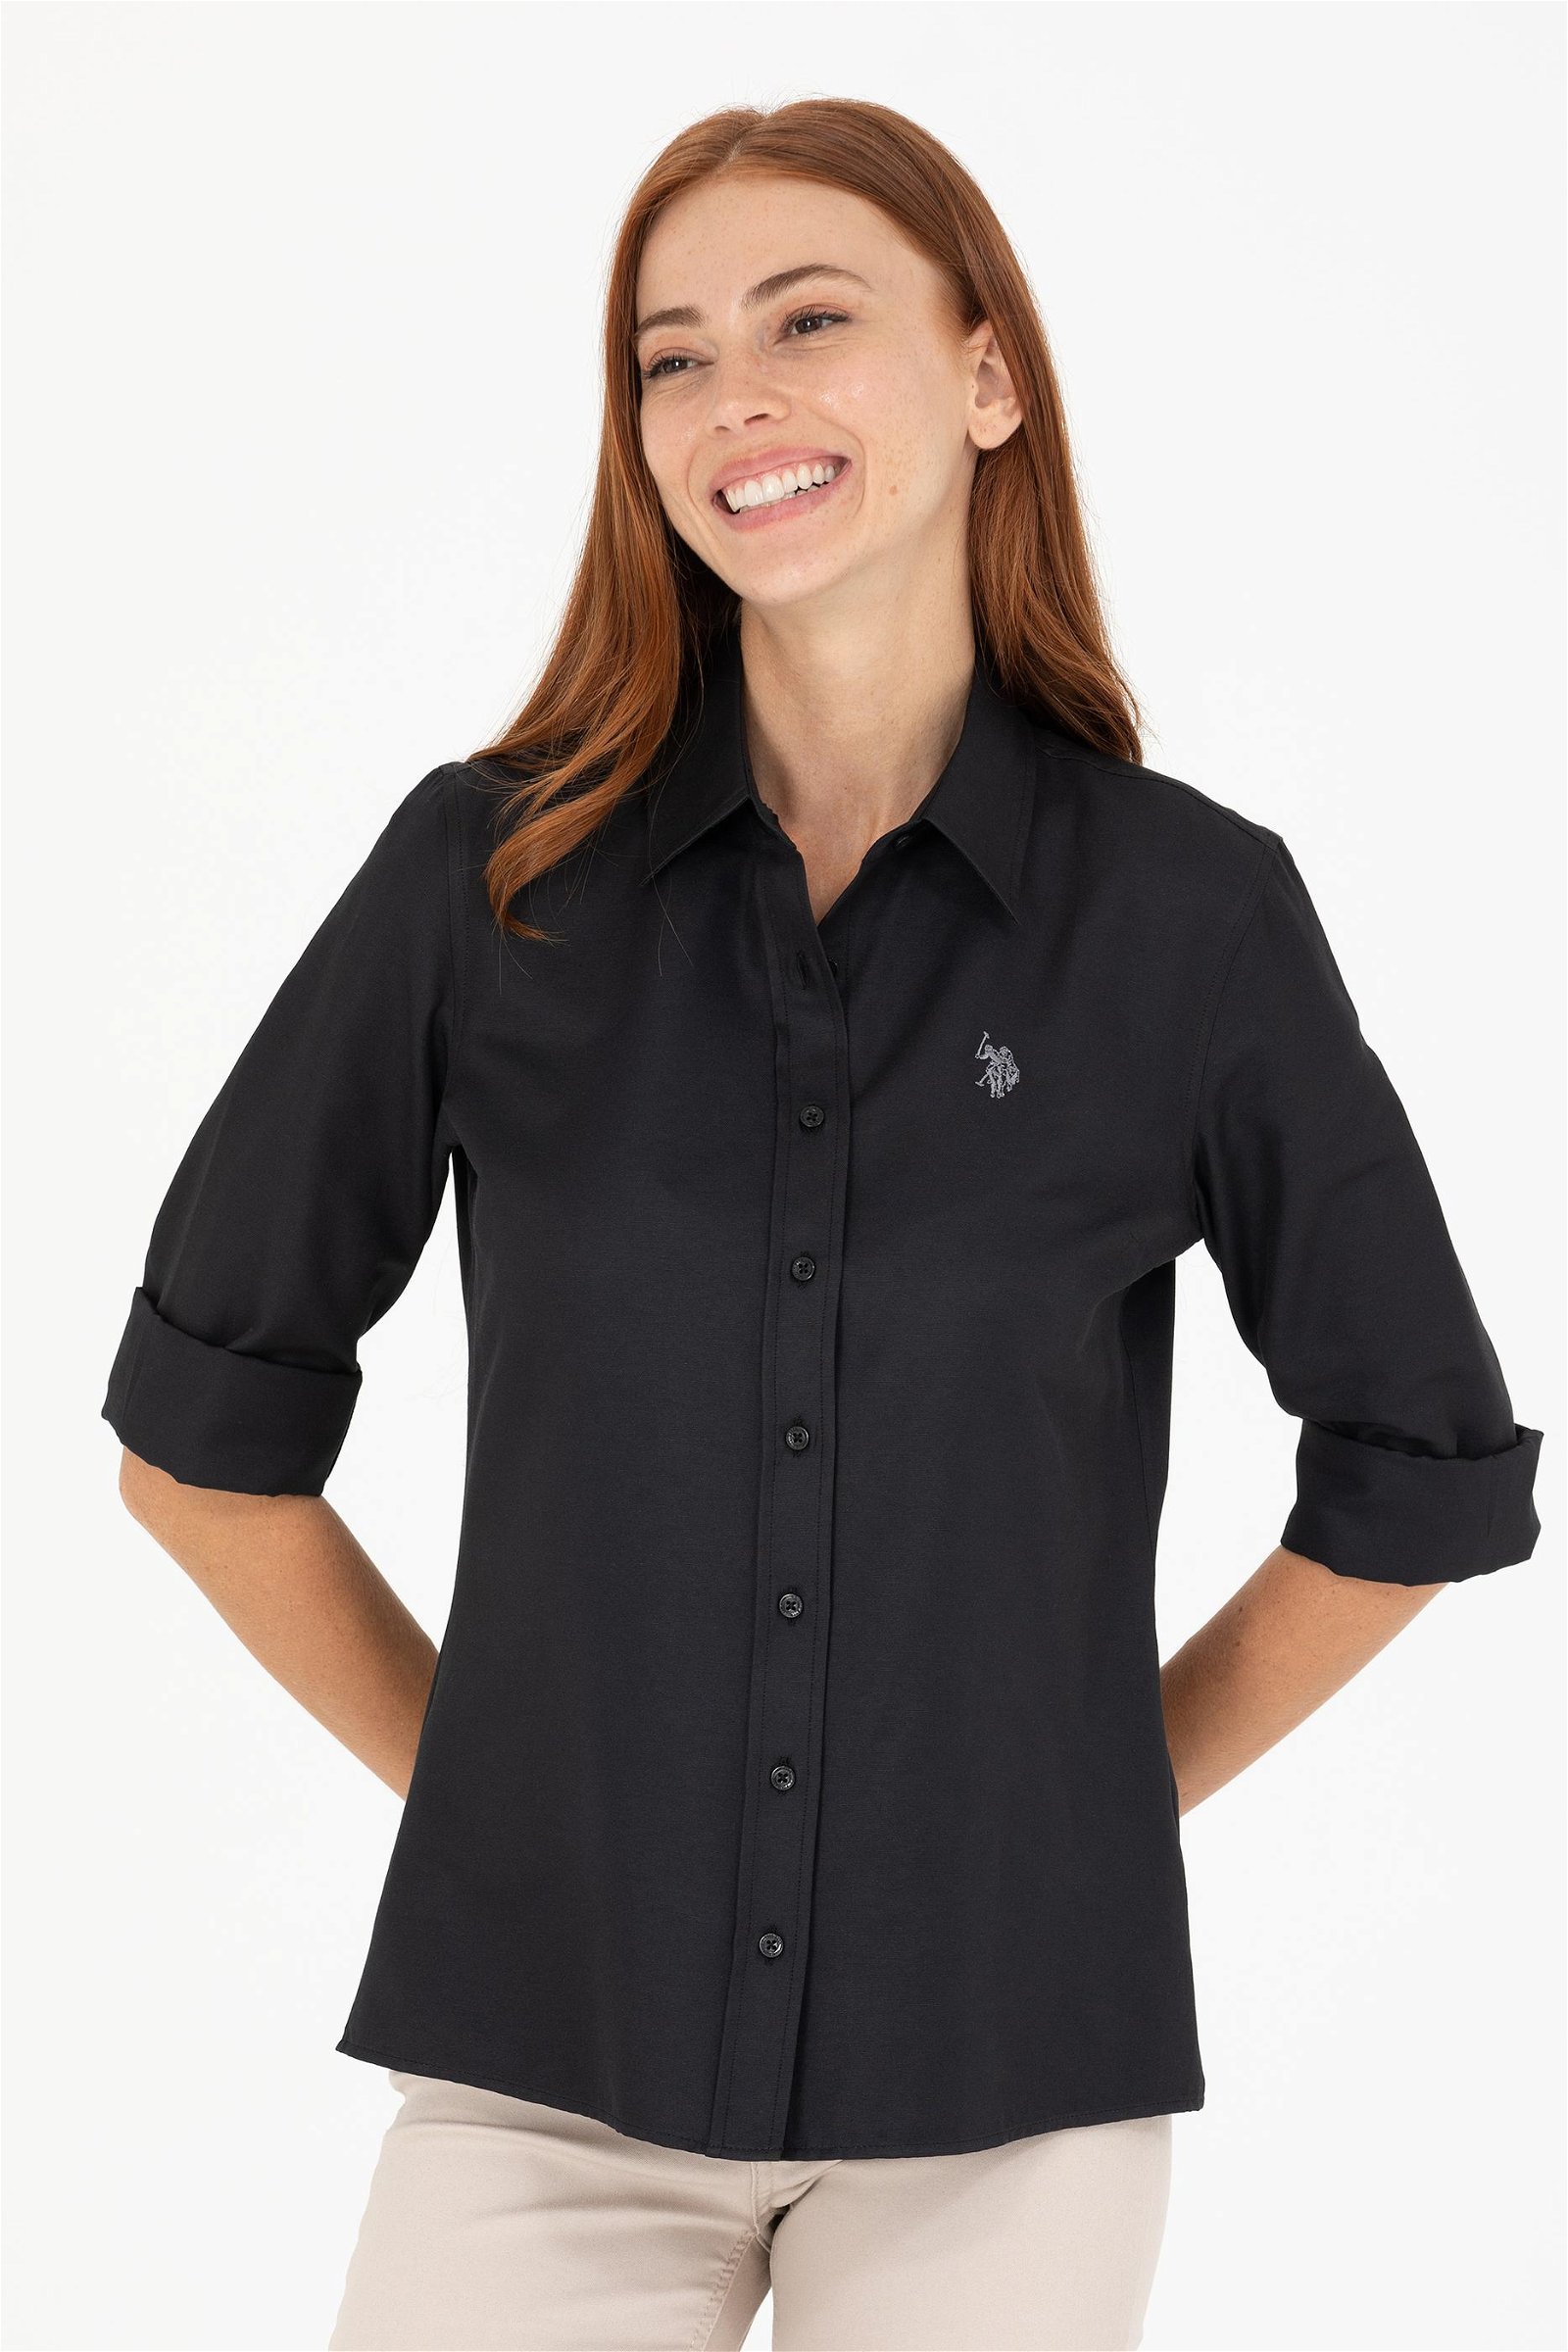 Kadın Siyah Uzun Kollu Basic Gömlek